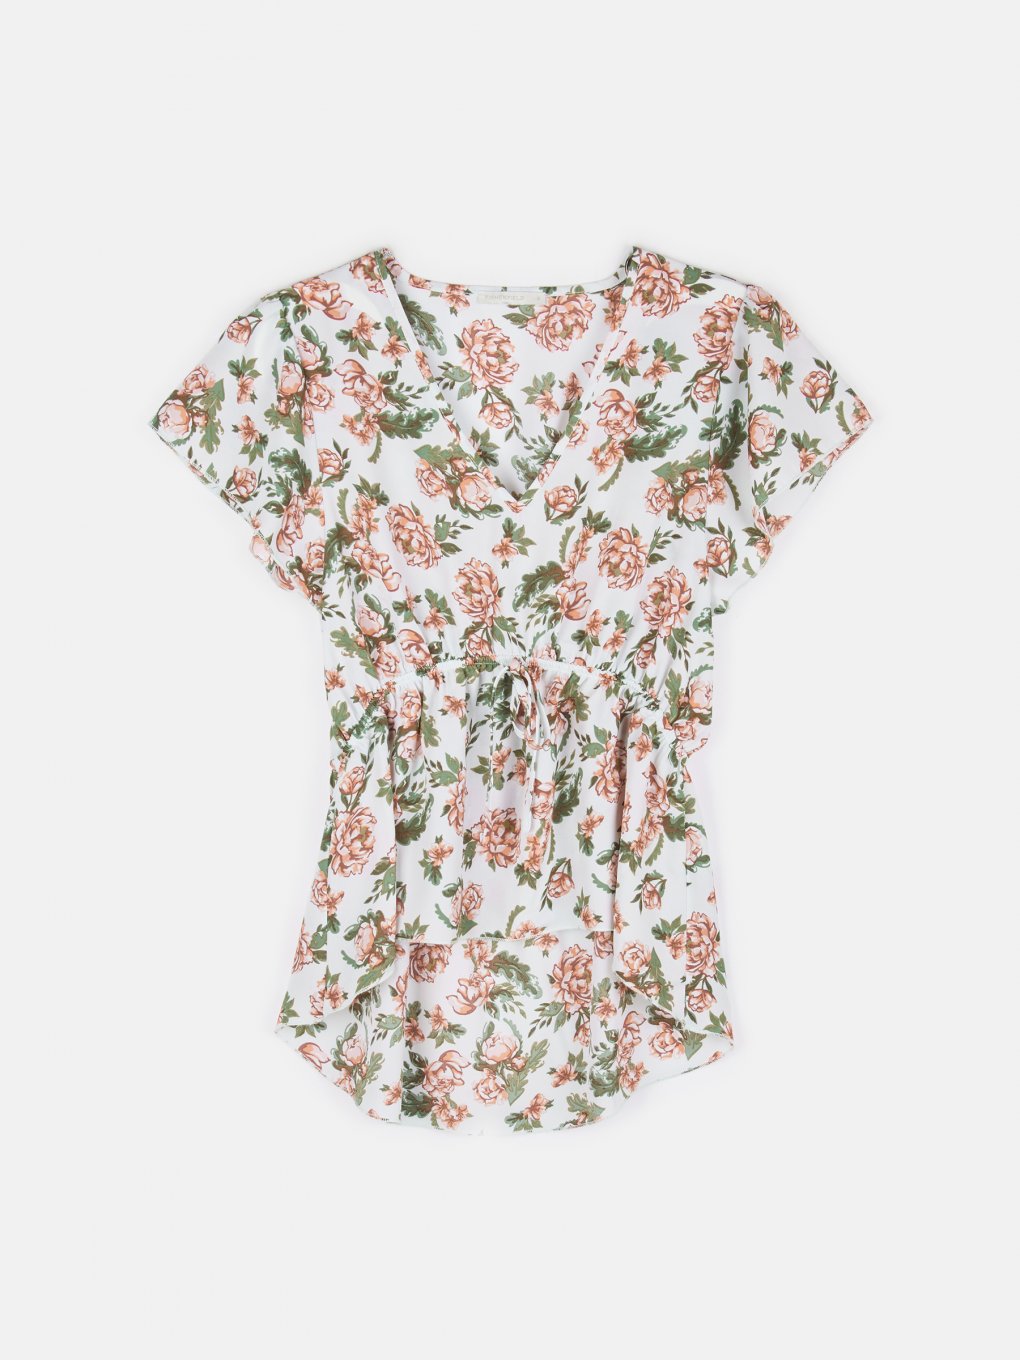 Chiffon floral blouse